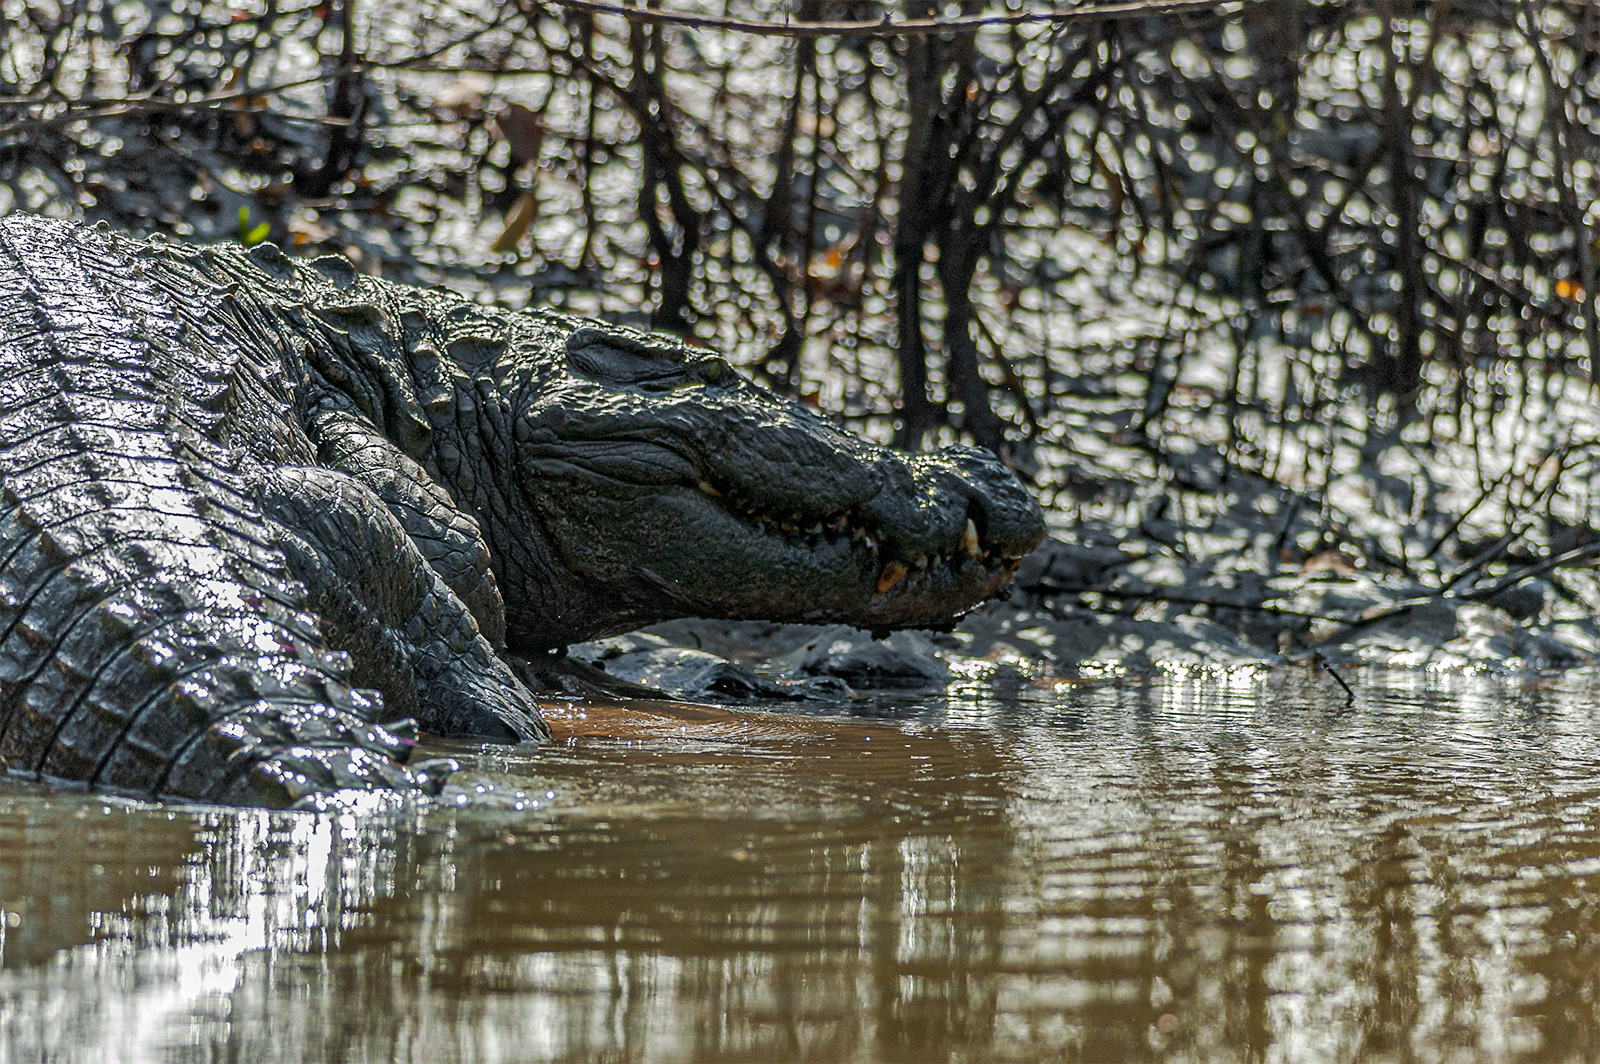 Fresh water crocodile in Cumbarjua Canal, Goa 2006.